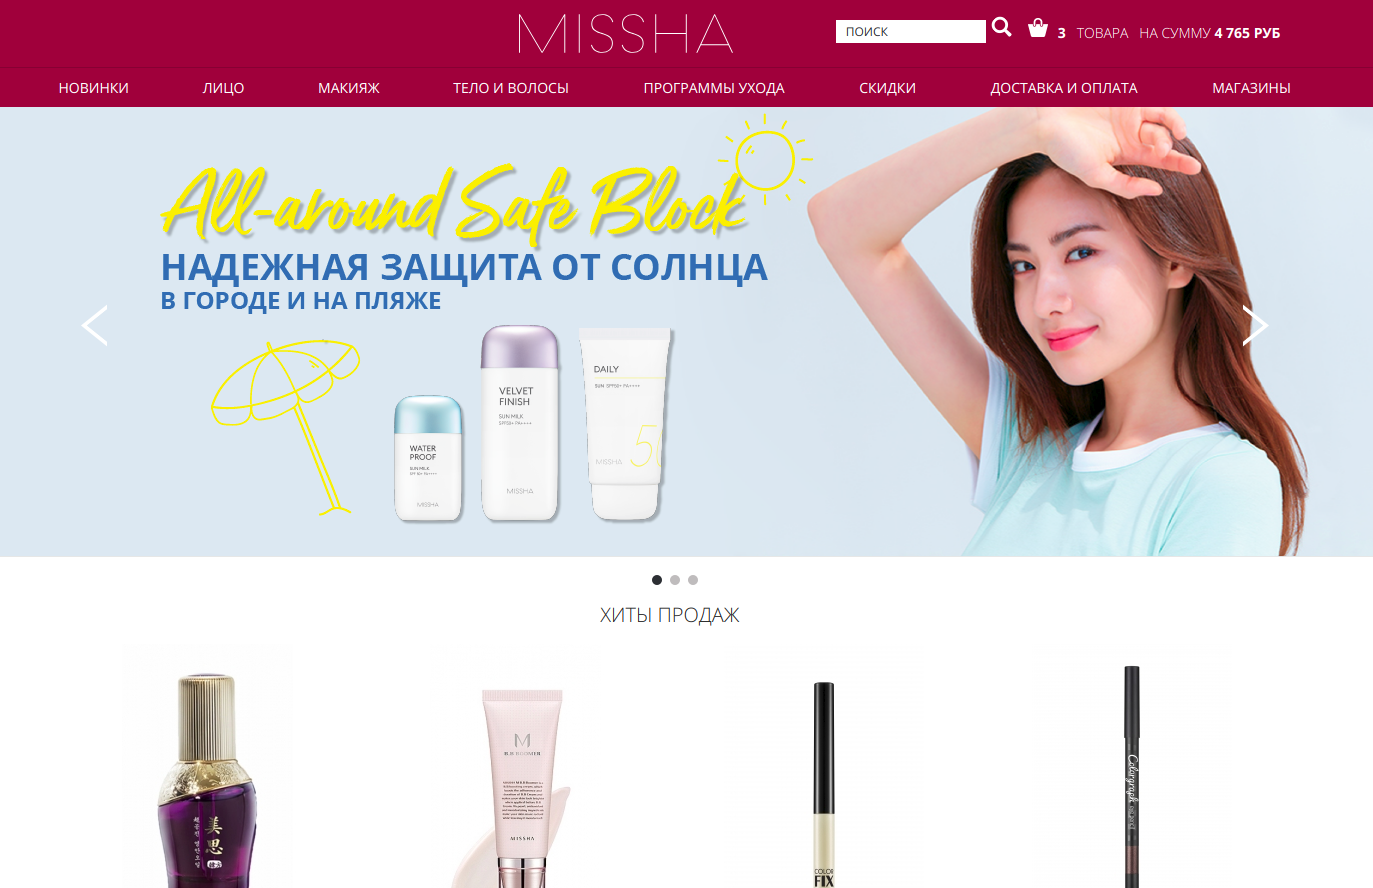 Официальный дистрибьютор корейской косметики MISSHA